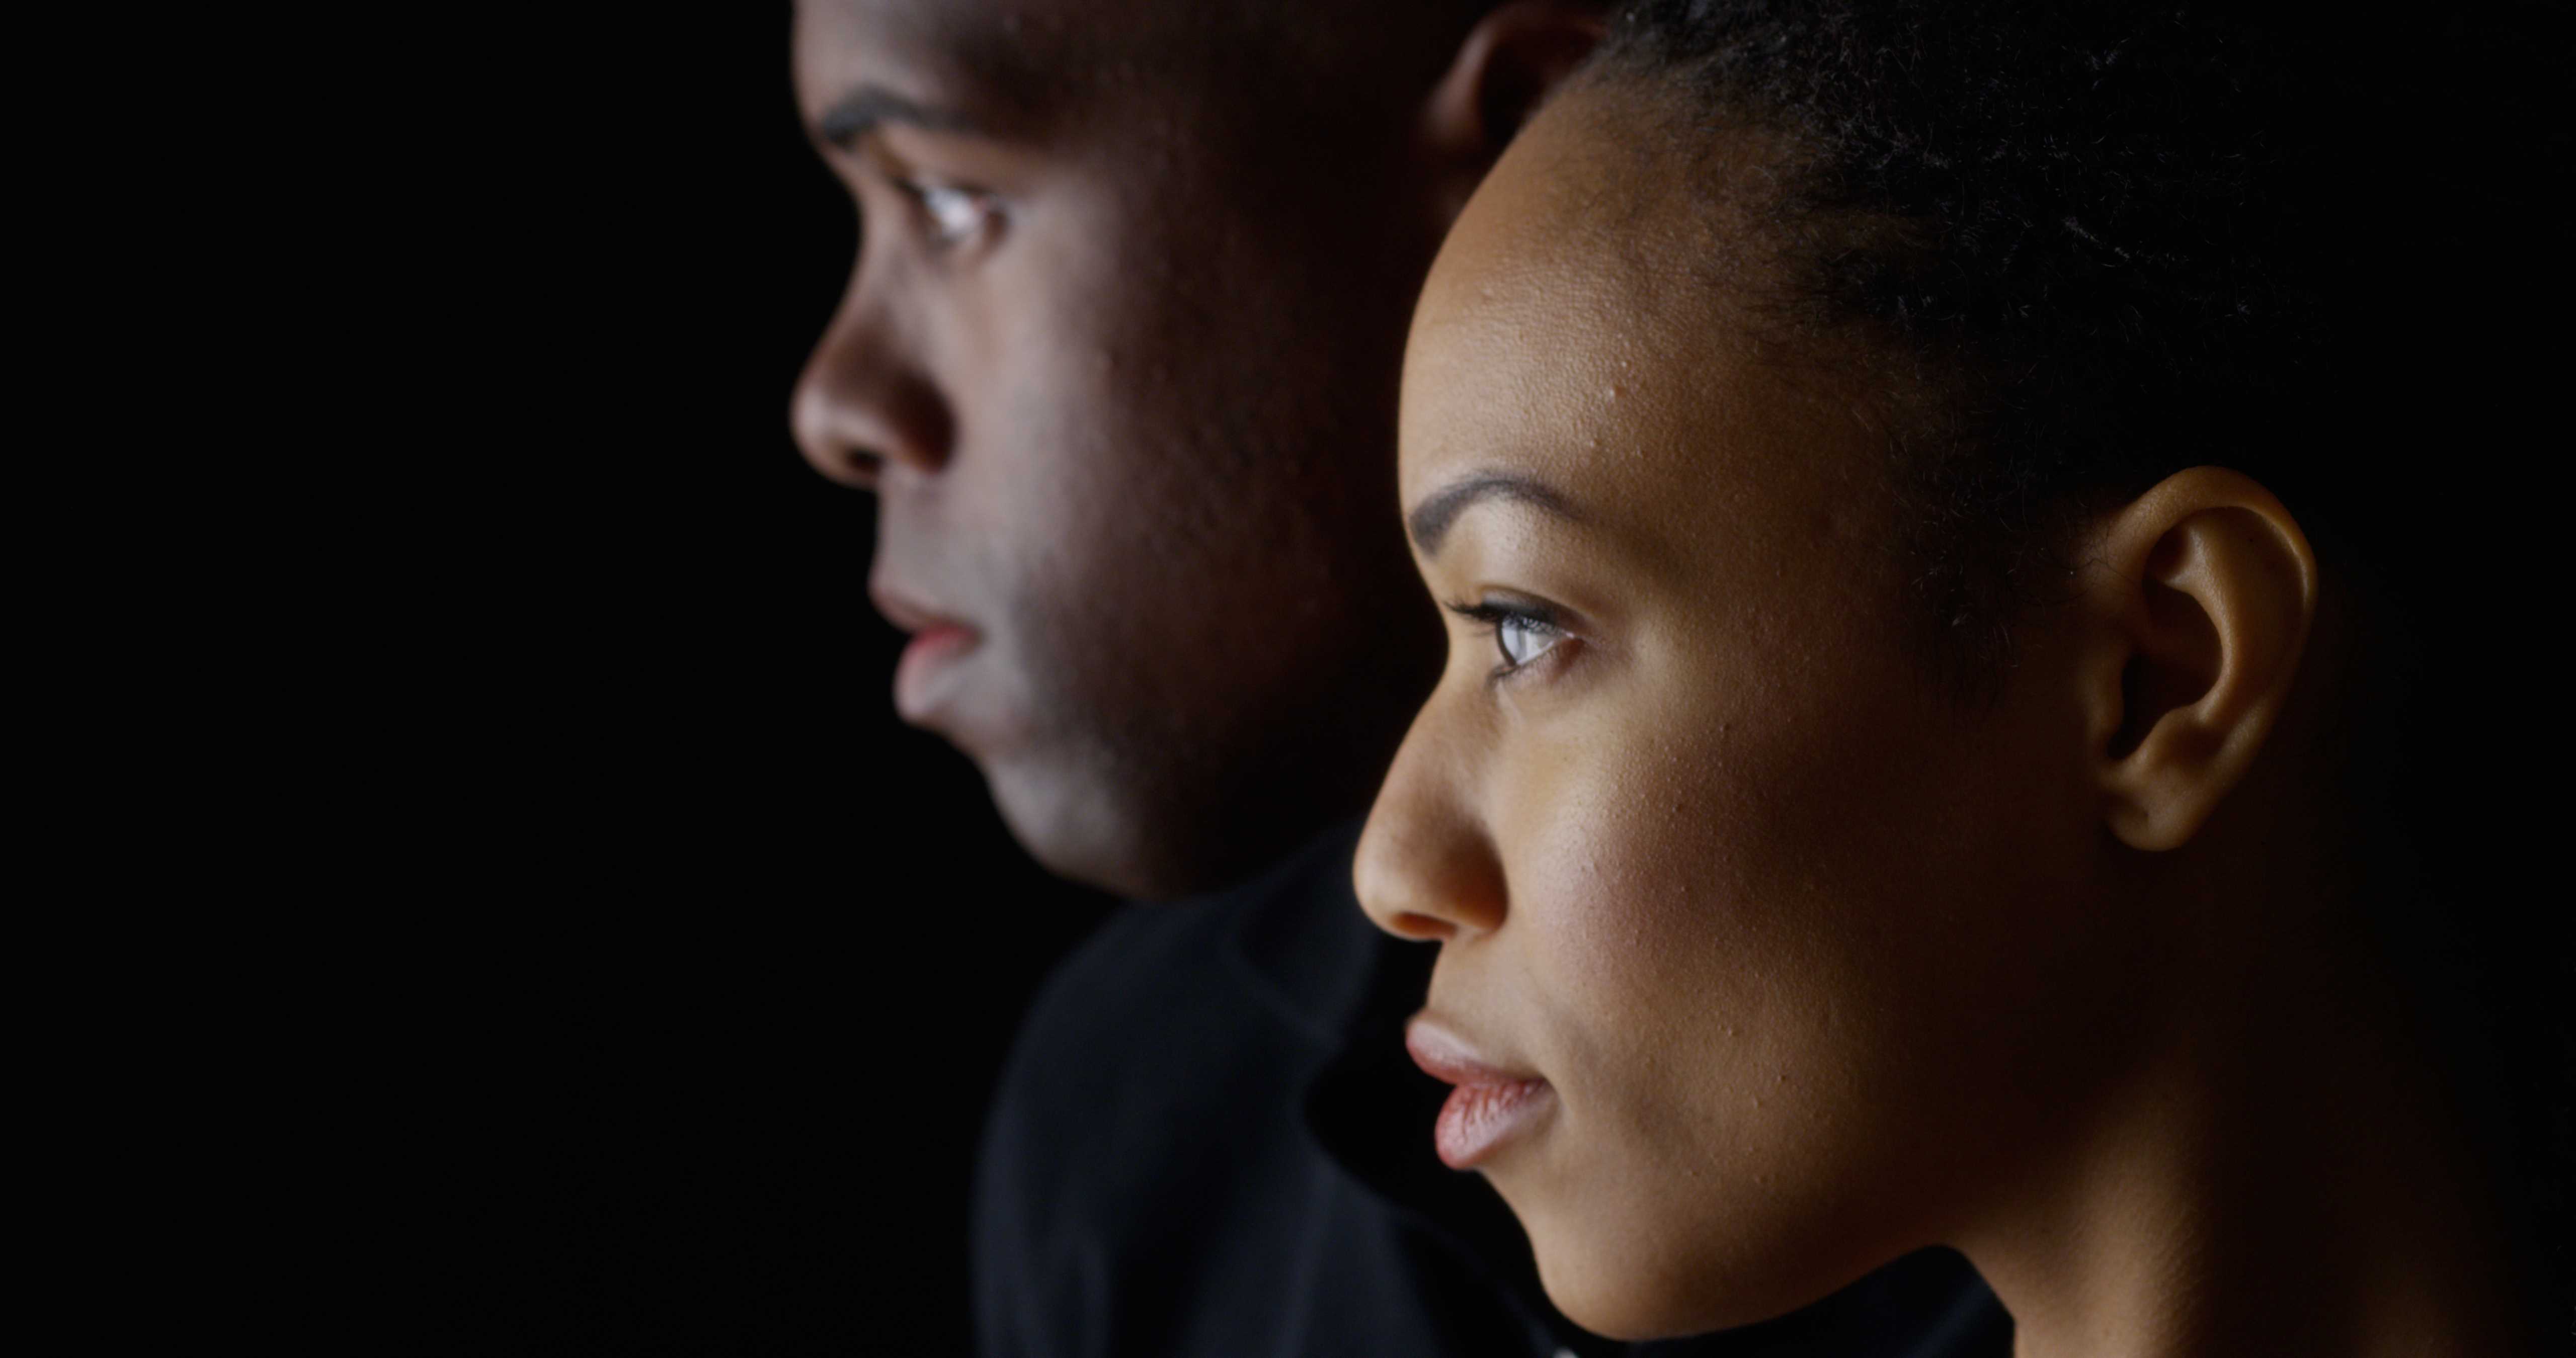 Image de profil d’une femme et d’un homme noirs sur un fond sombre.